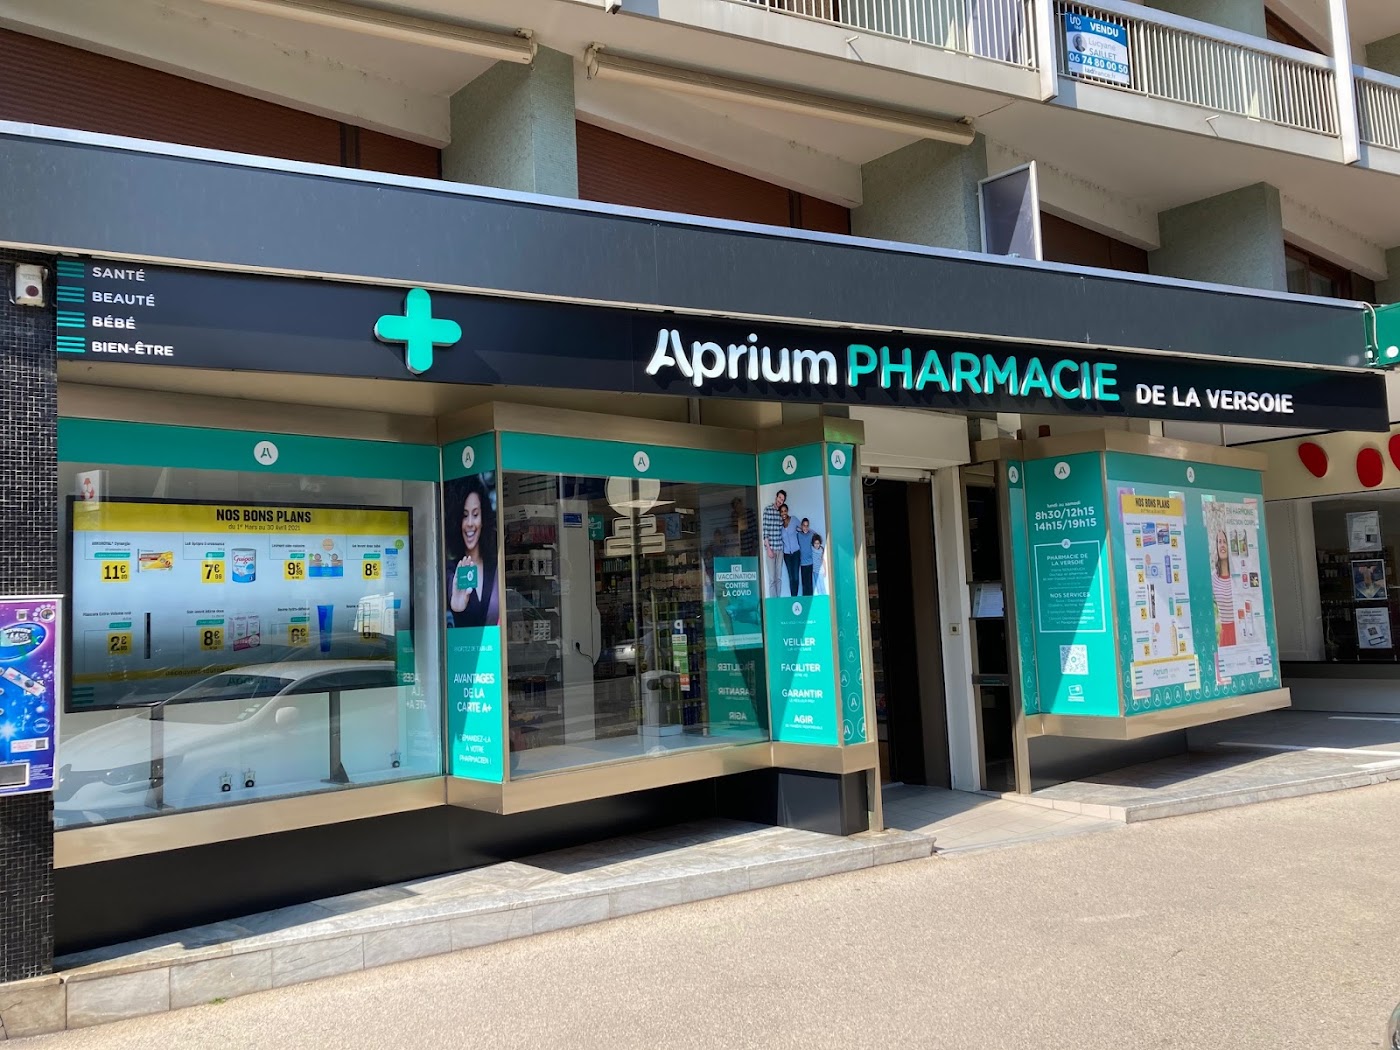 Aprium Pharmacie de la Versoie